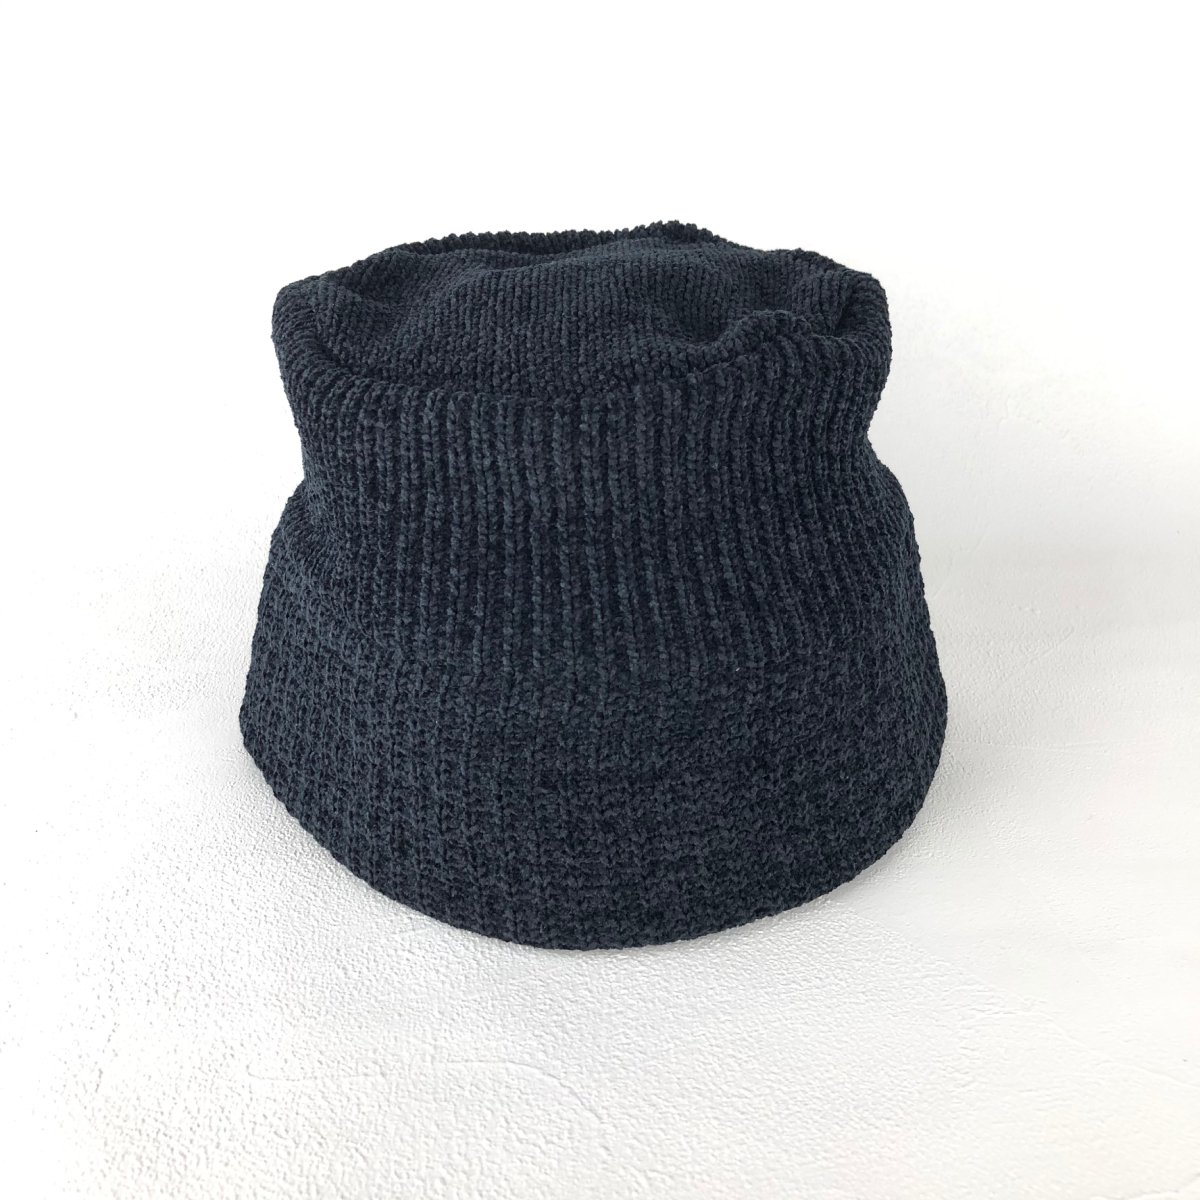 Superb Knit Hat